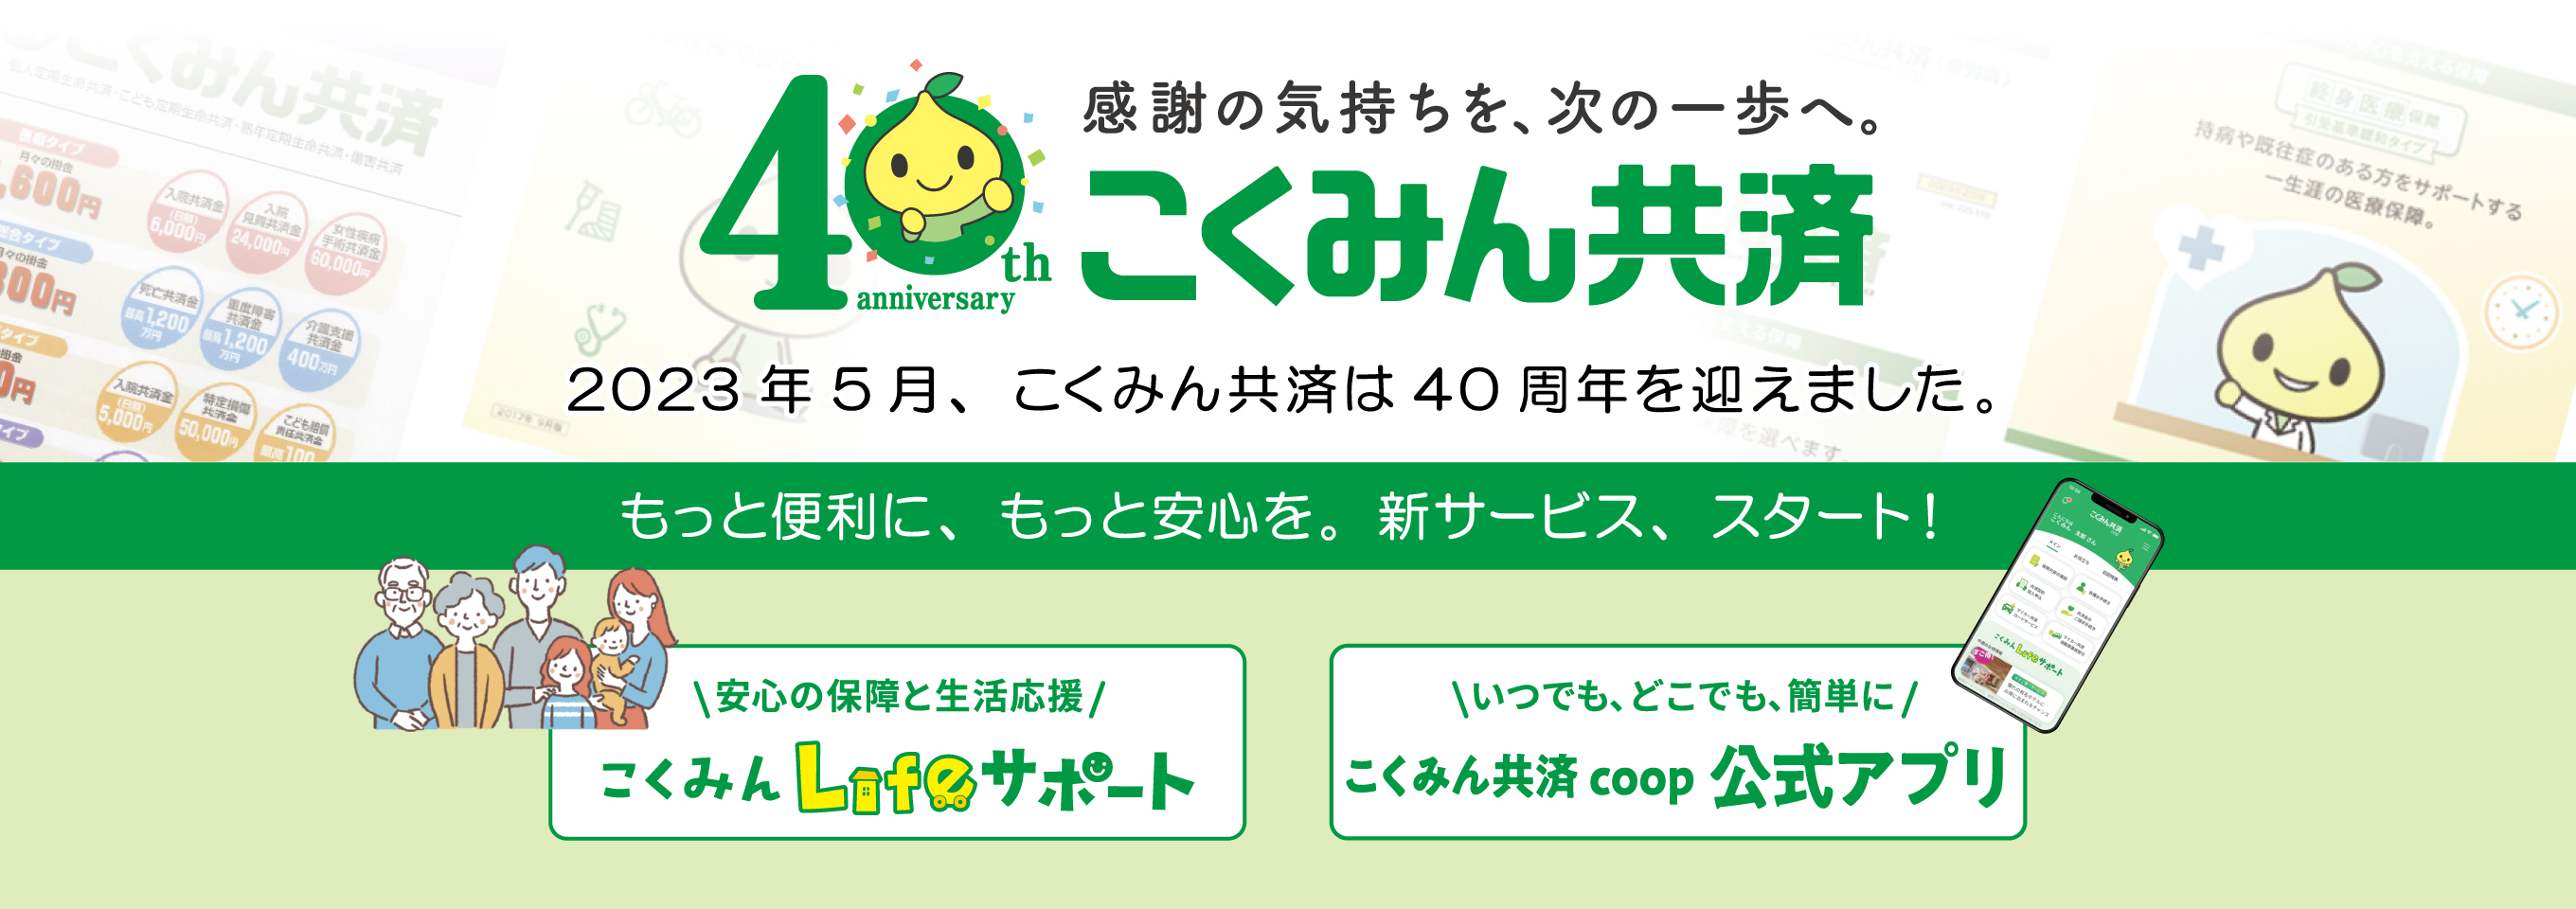 「こくみん共済」40周年記念サイト